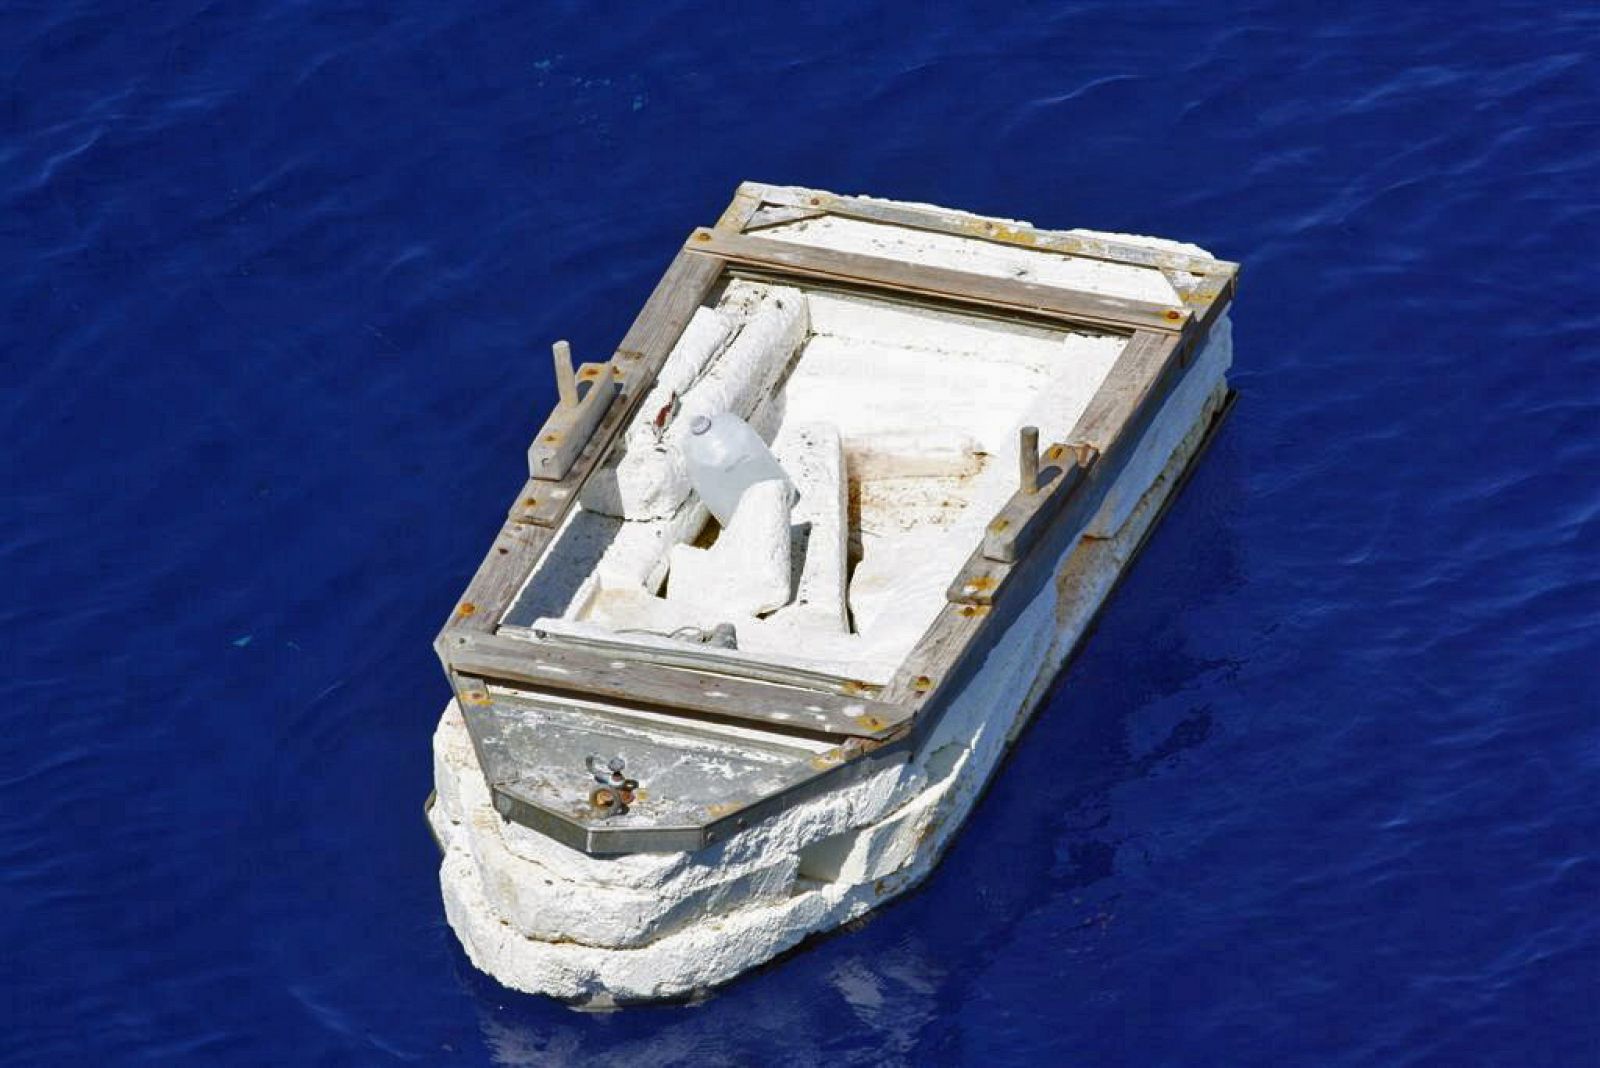 Fotografía donde se aprecia la balsa construida con espuma de poliuretano (gomaespuma) que llevaba a un ciudadano cubano que estuvo 25 días a la deriva